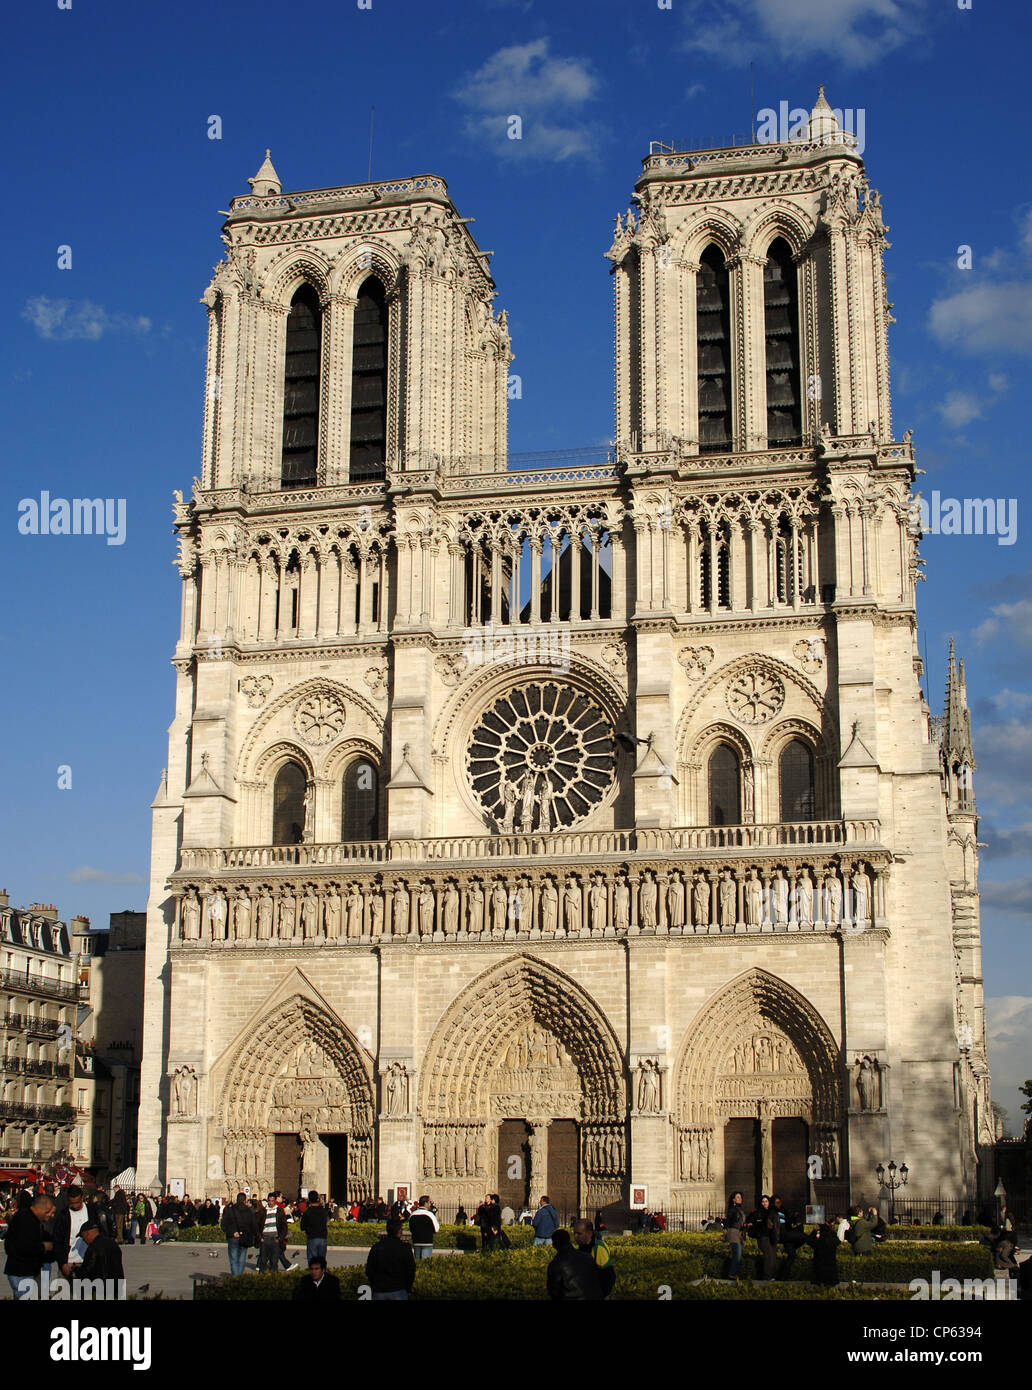 La Francia. Parigi. La cattedrale di Notre Dame. Xii - XIV secolo. Fronte ovest. Foto Stock